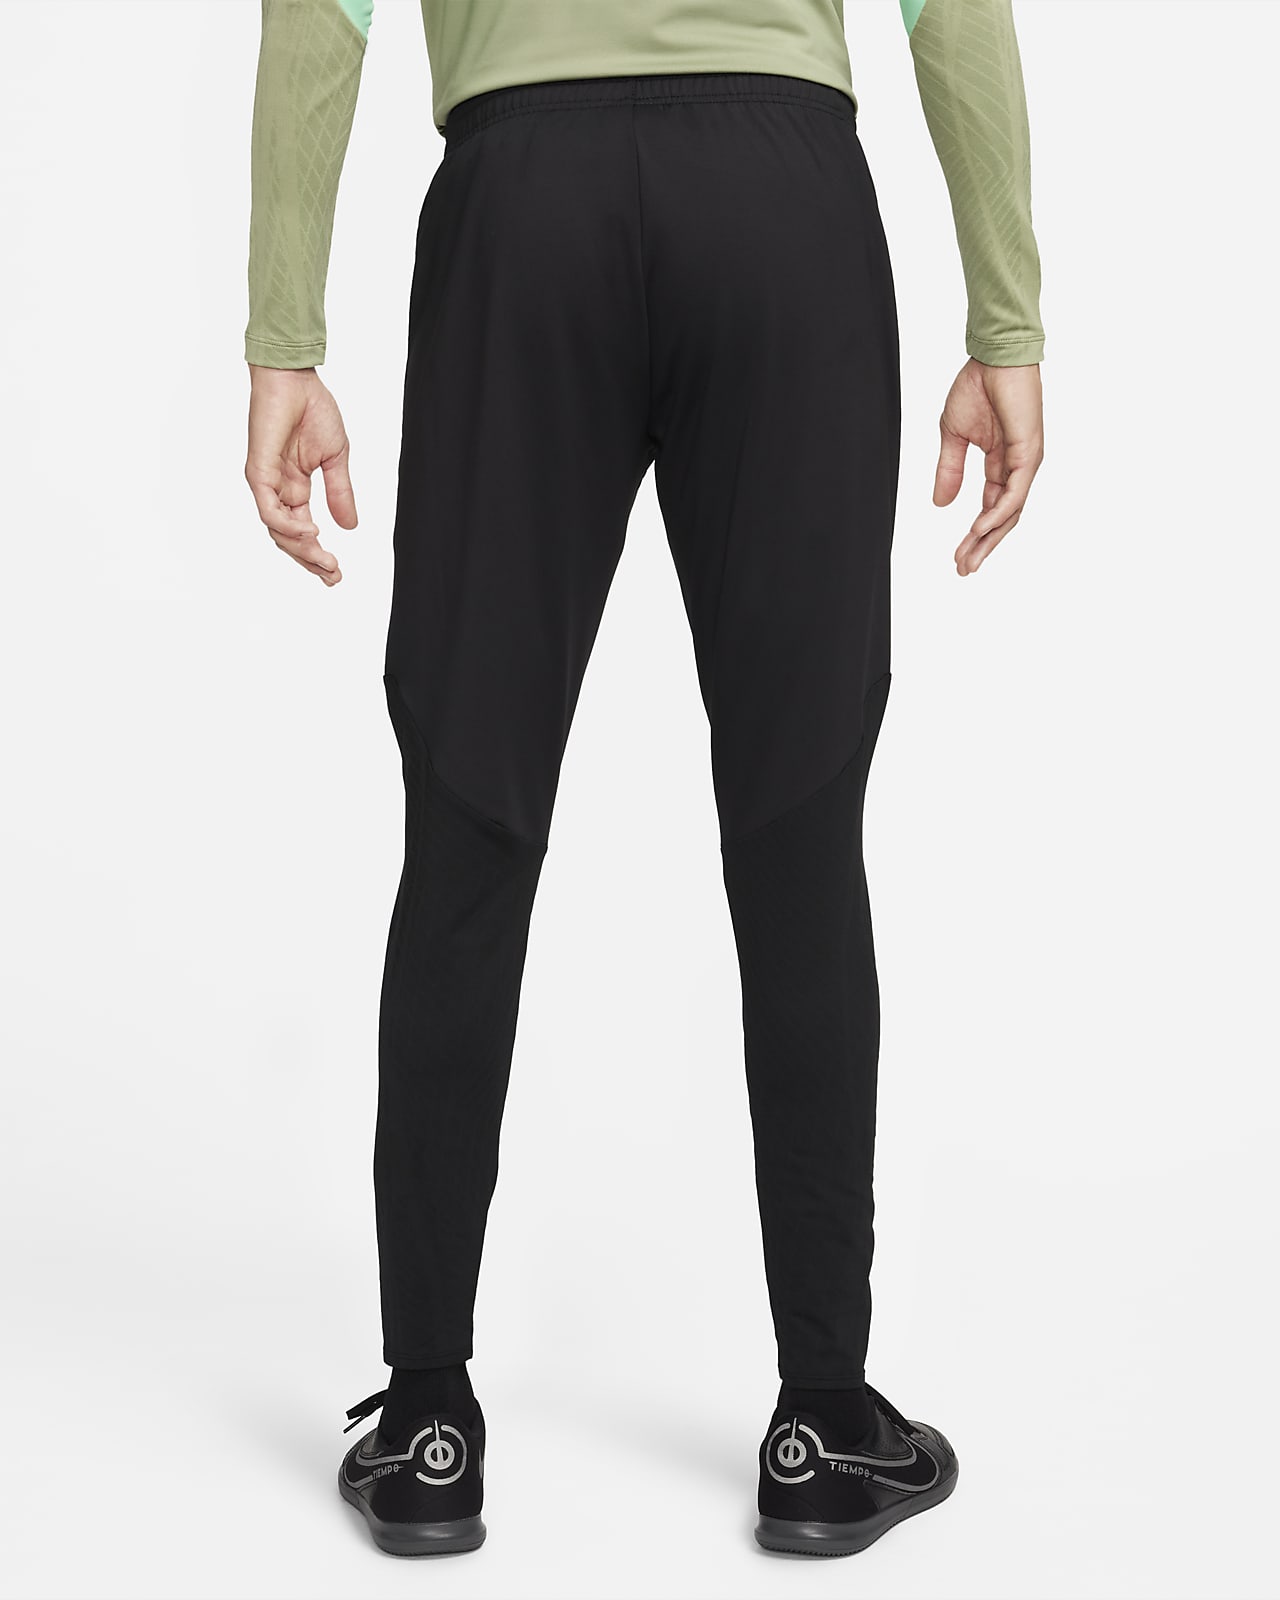 Nike Yoga Dri-FIT Men's Trousers. Nike FI